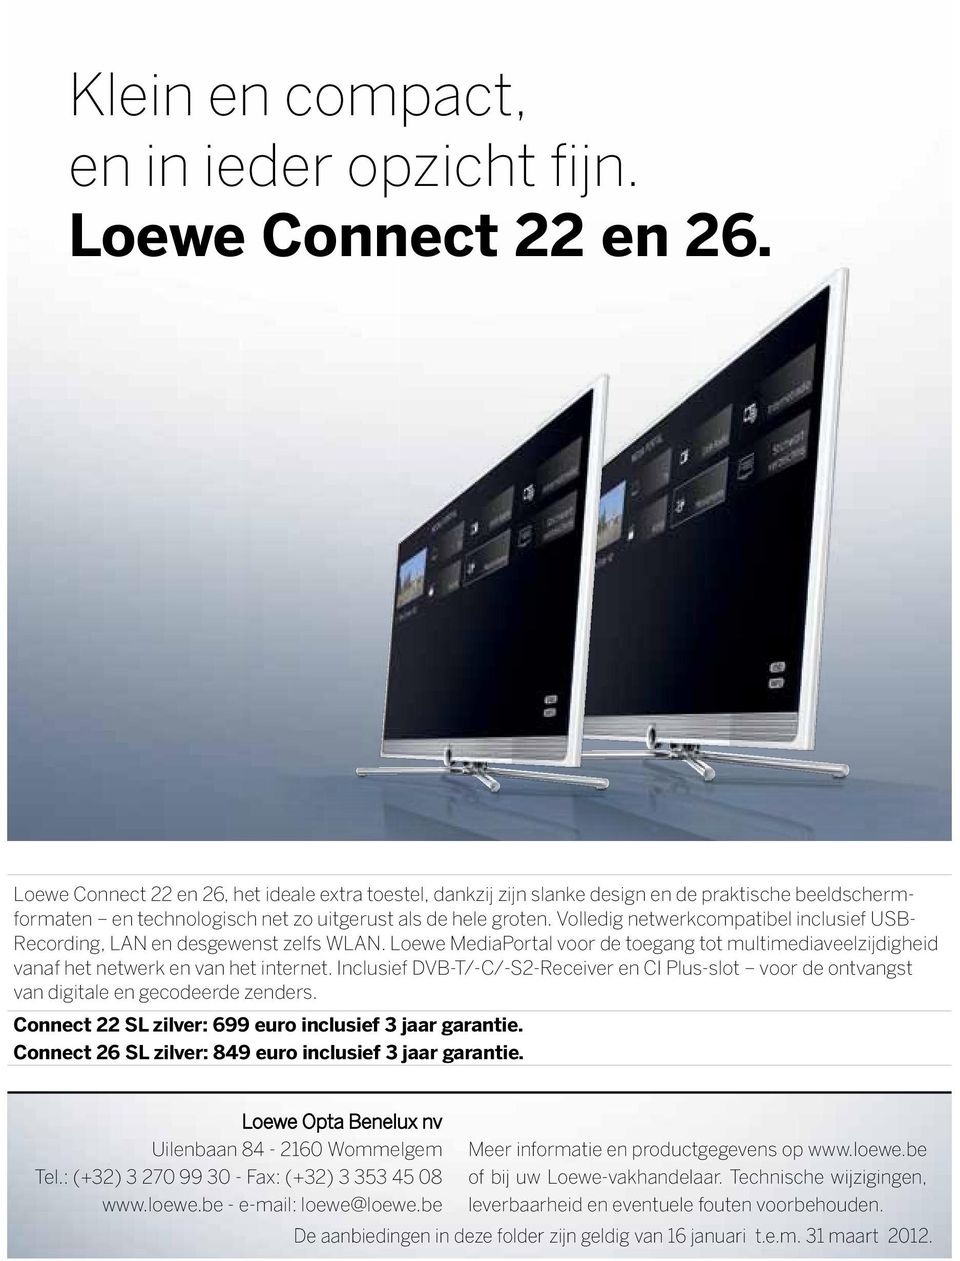 Volledig netwerkcompatibel inclusief USB- Recording, LAN en desgewenst zelfs WLAN. Loewe MediaPortal voor de toegang tot multimediaveelzijdigheid vanaf het netwerk en van het internet.